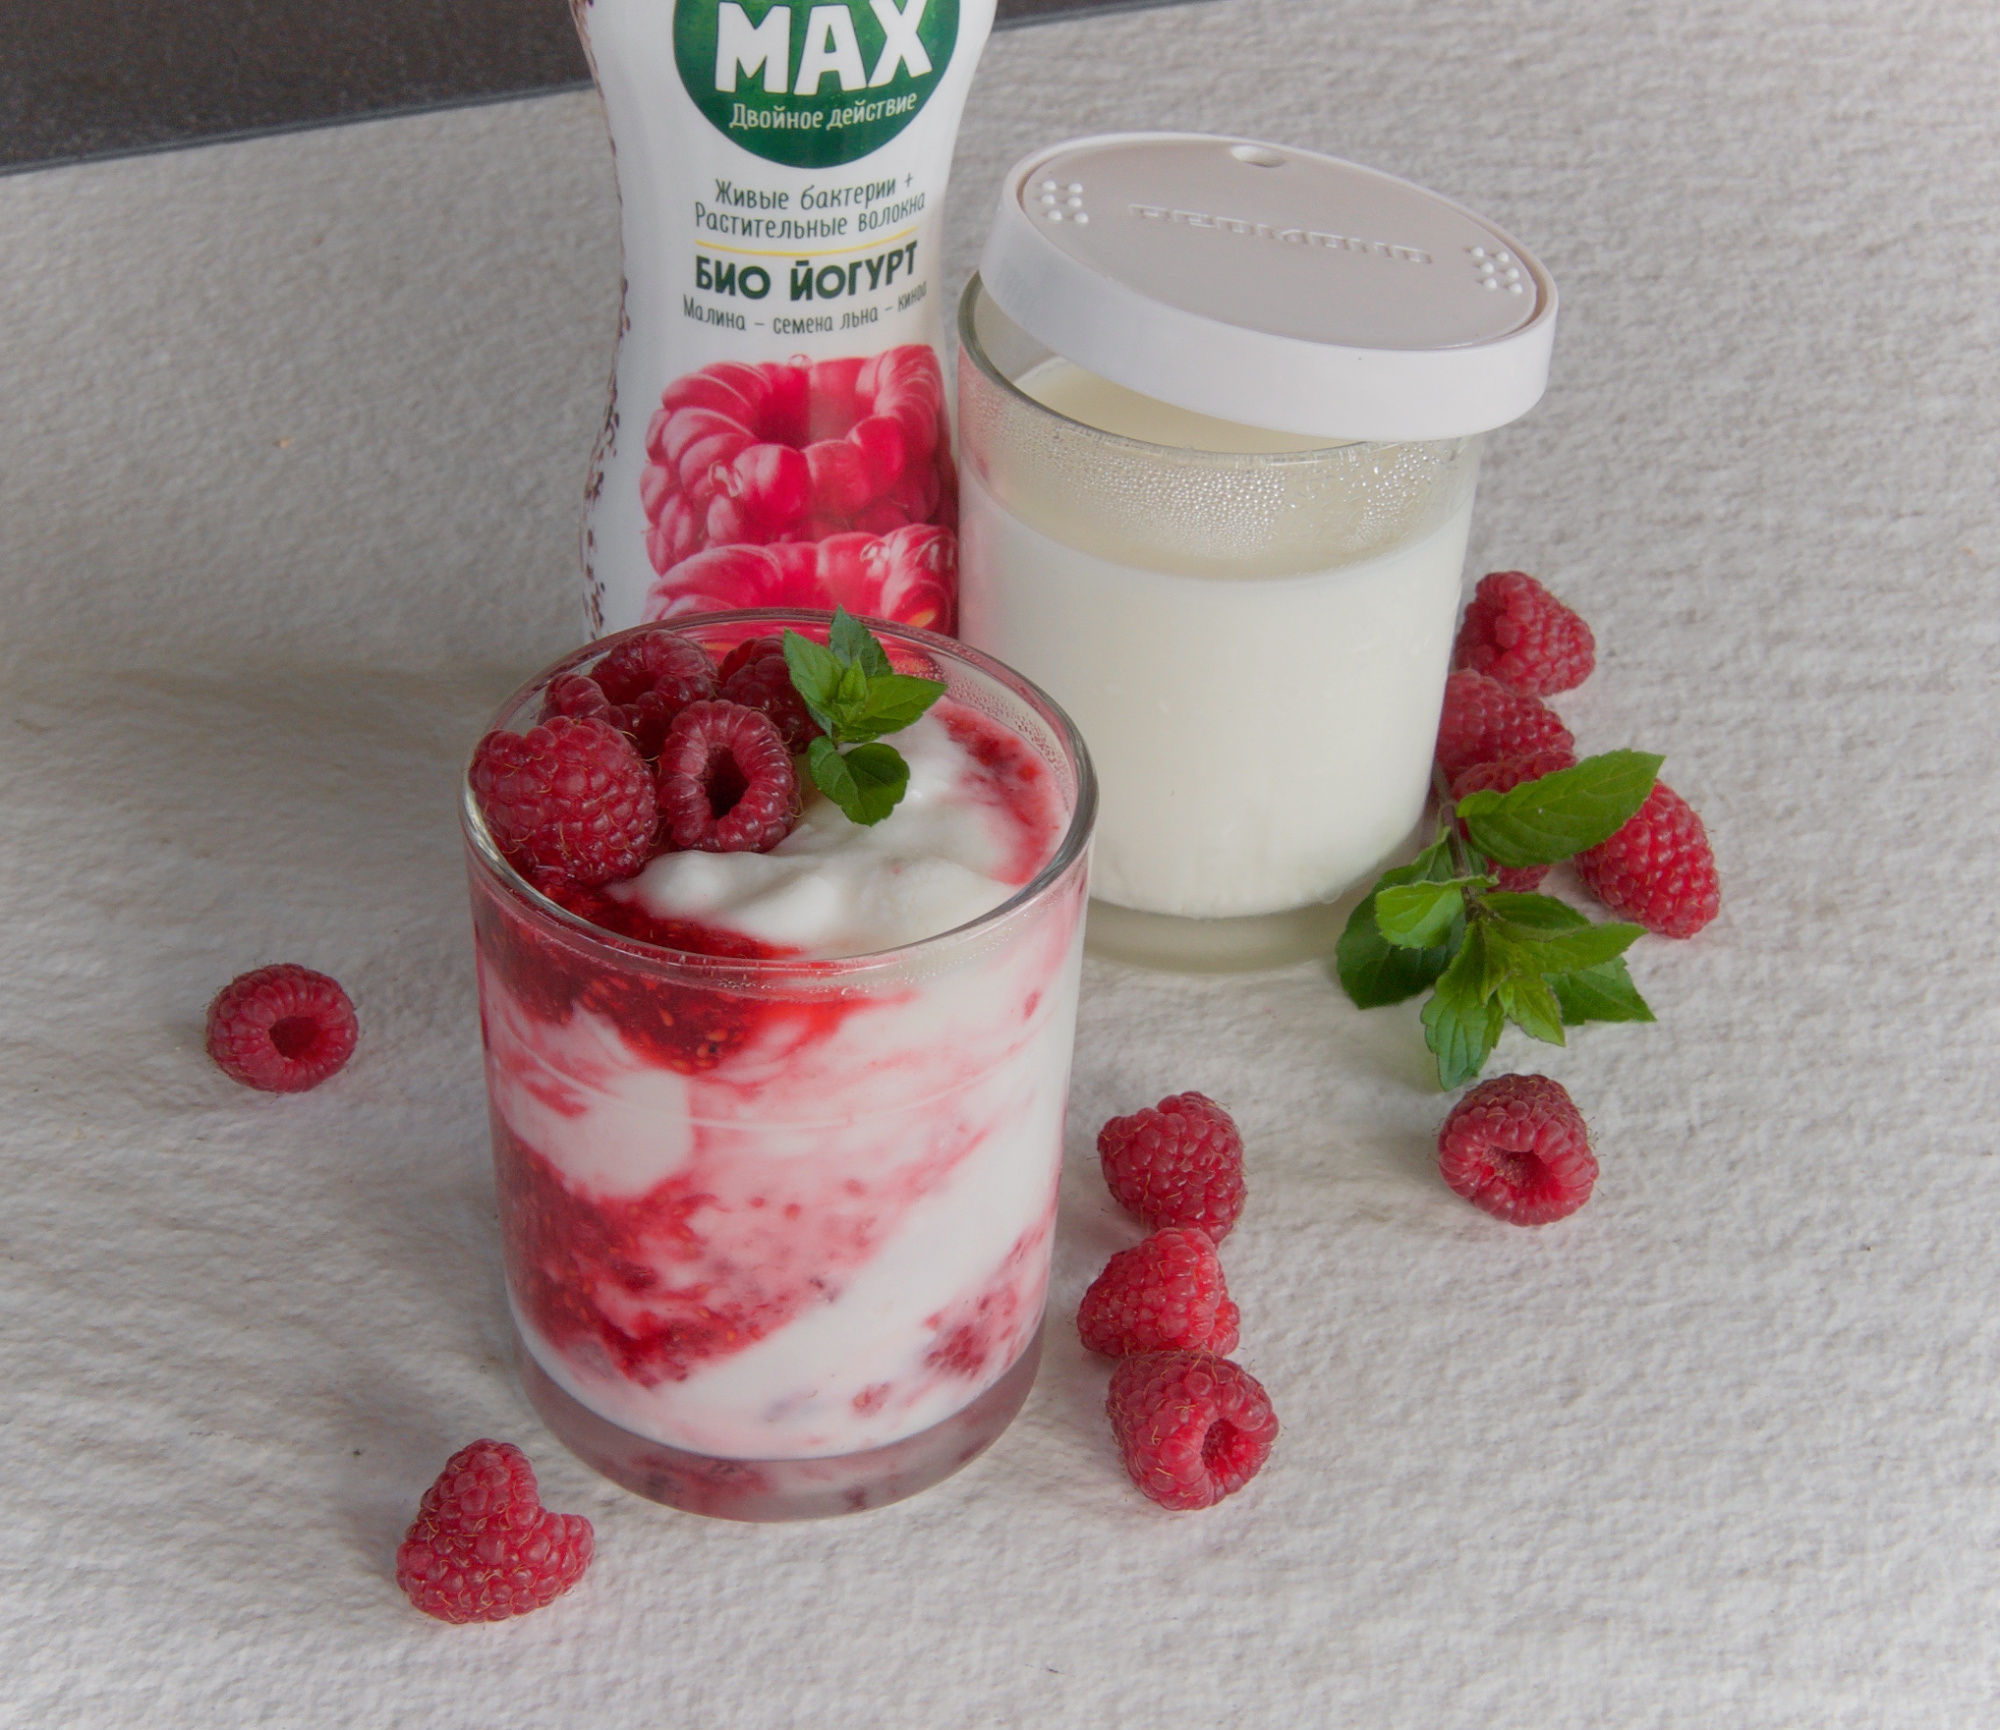 Фото питьевого йогурта. Йогурт. Домашний йогурт. Домашний фруктовый йогурт. Домашний йогурт с добавками.